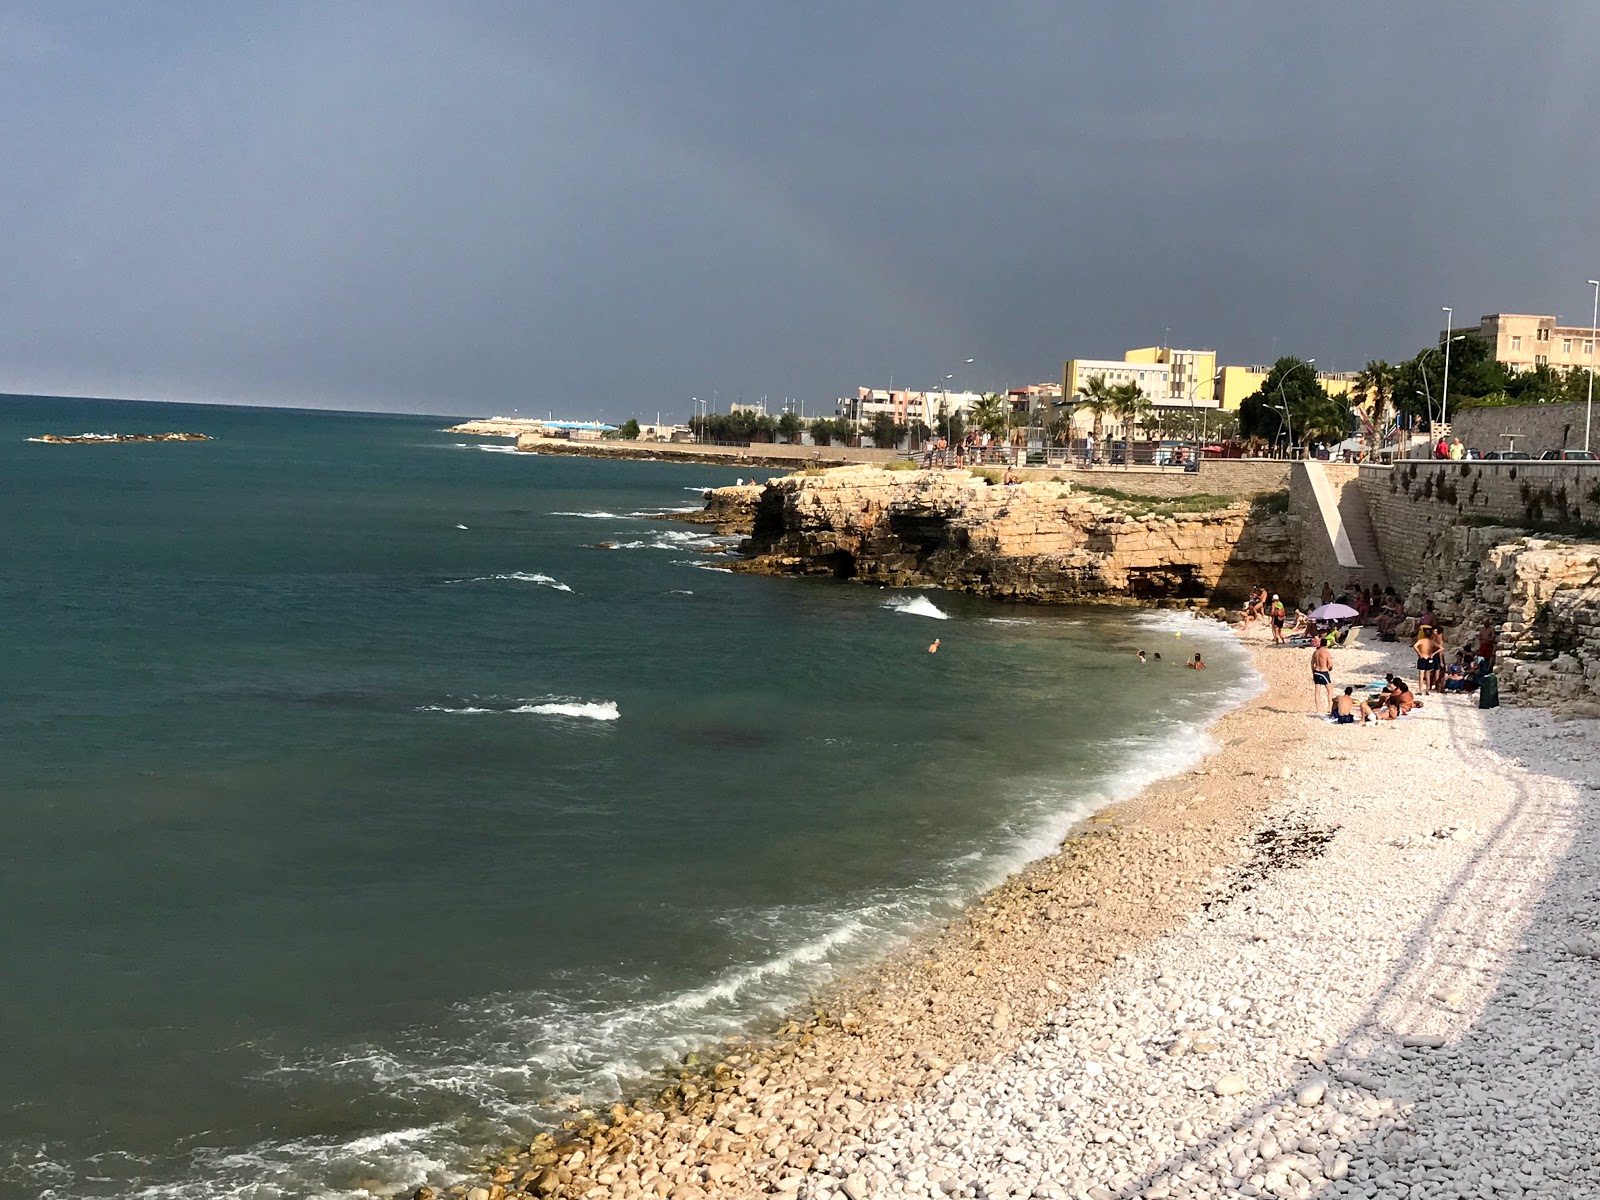 Spiaggia La Salata'in fotoğrafı hafif çakıl yüzey ile